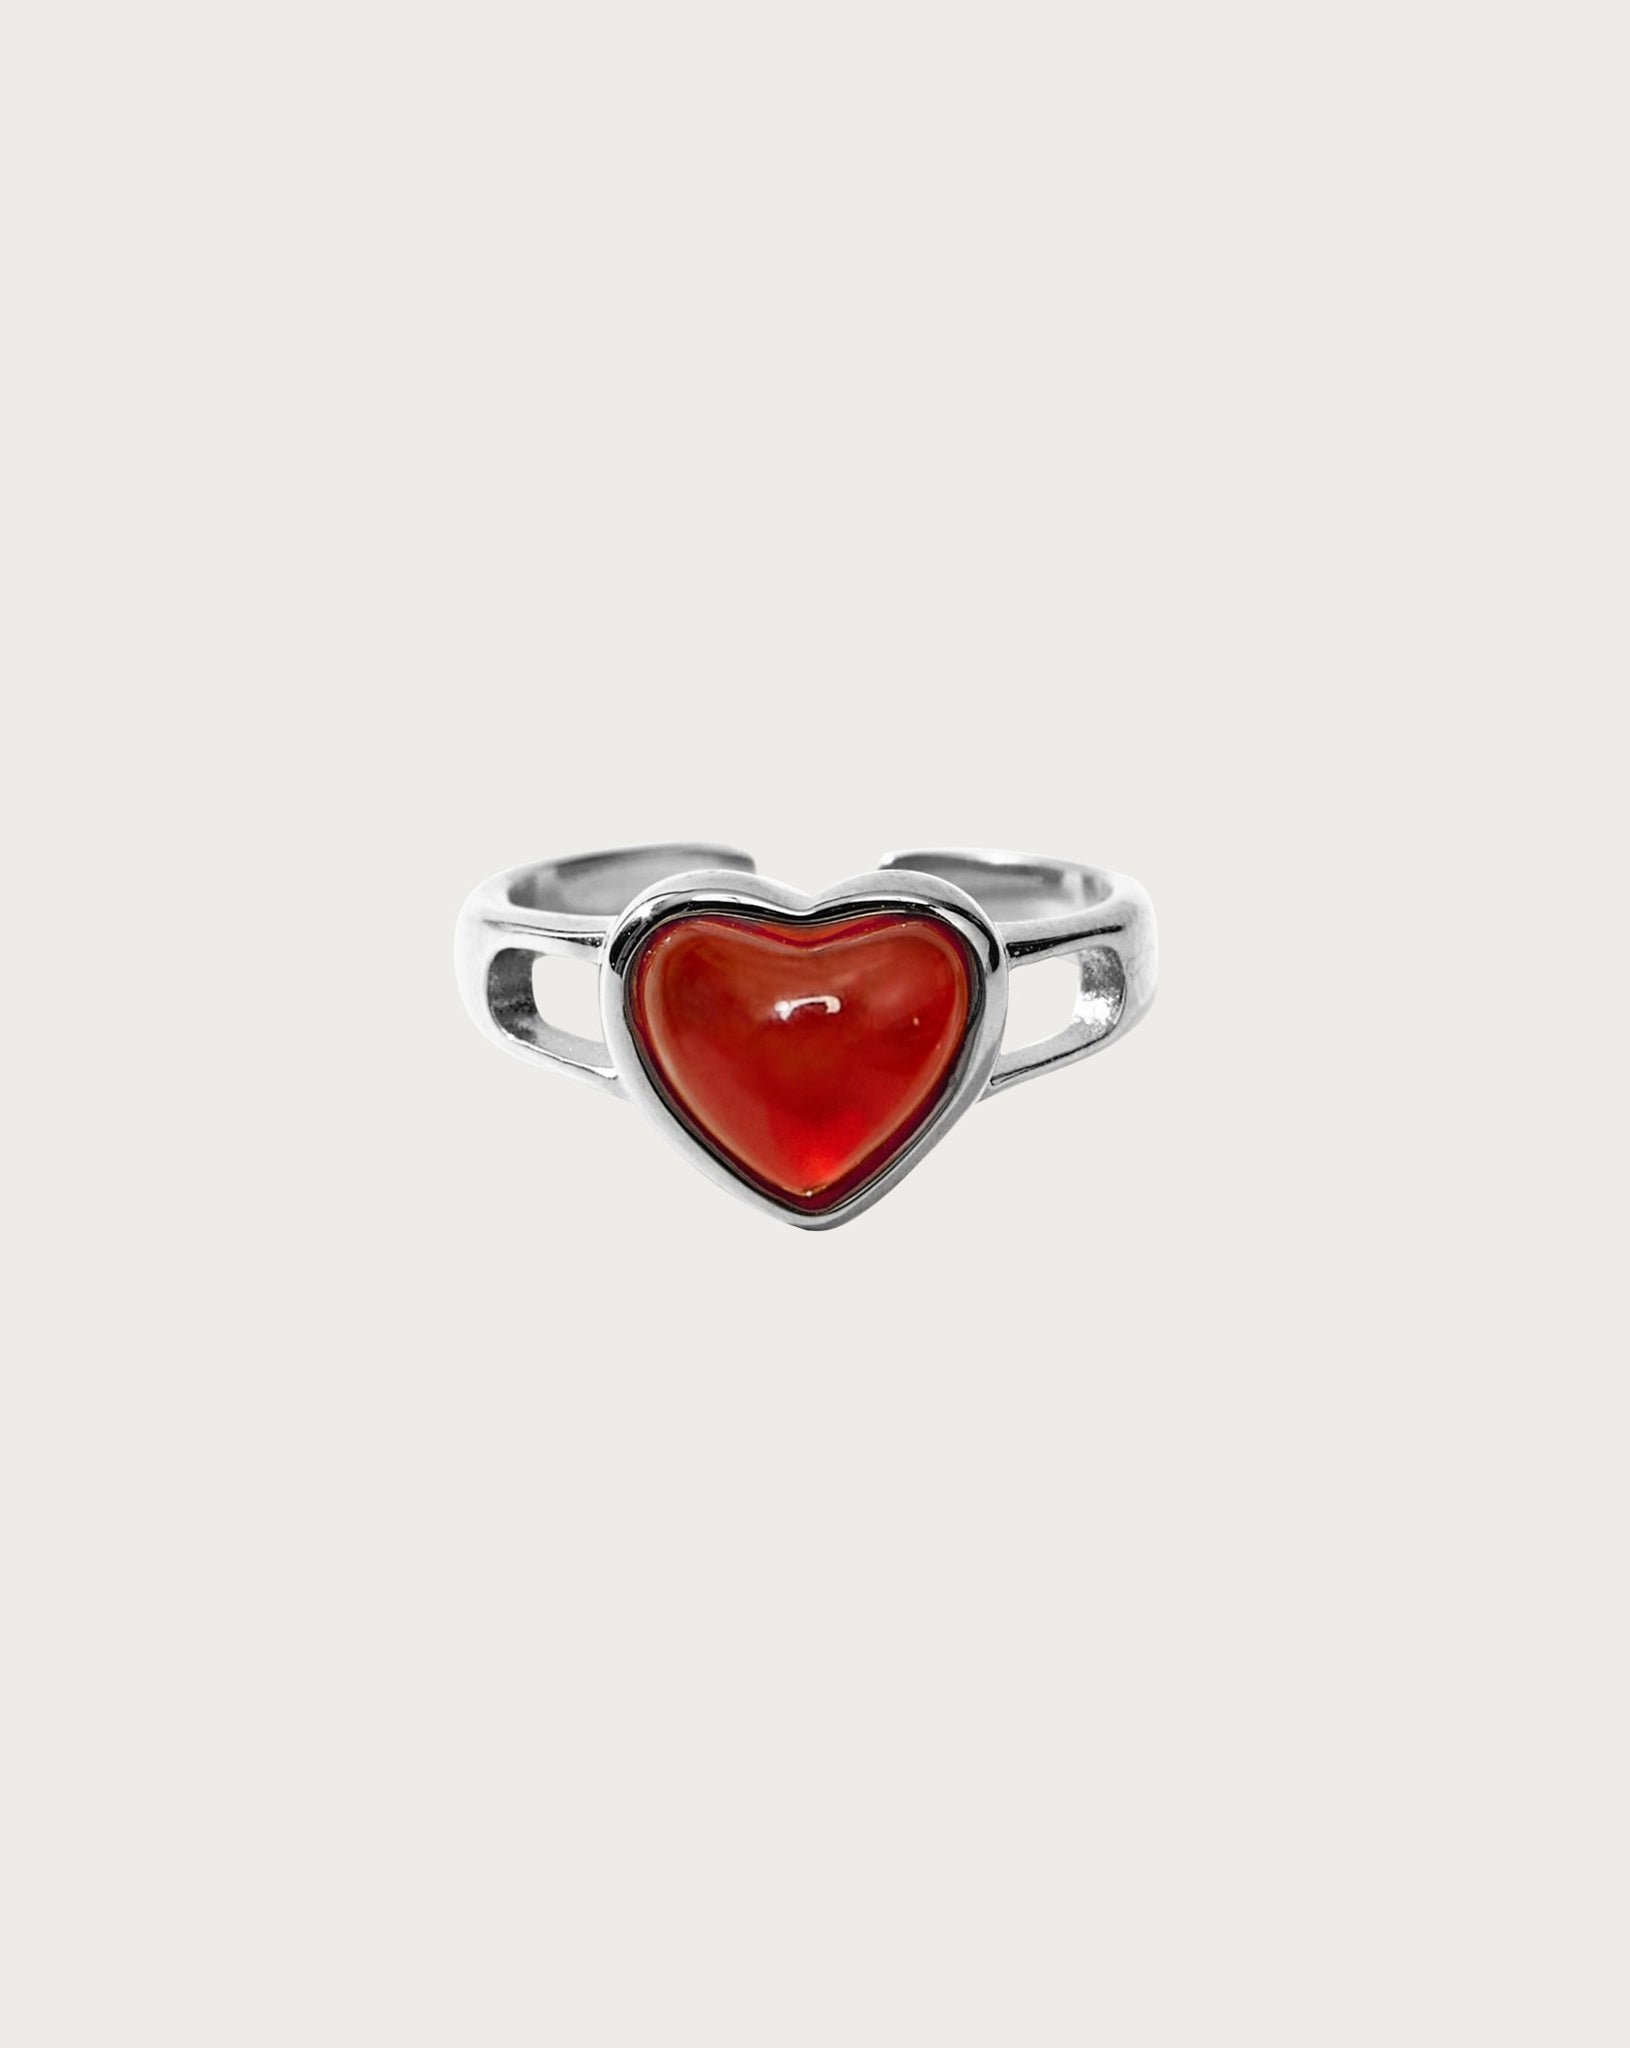 Carnelian Heart Ring in Silver